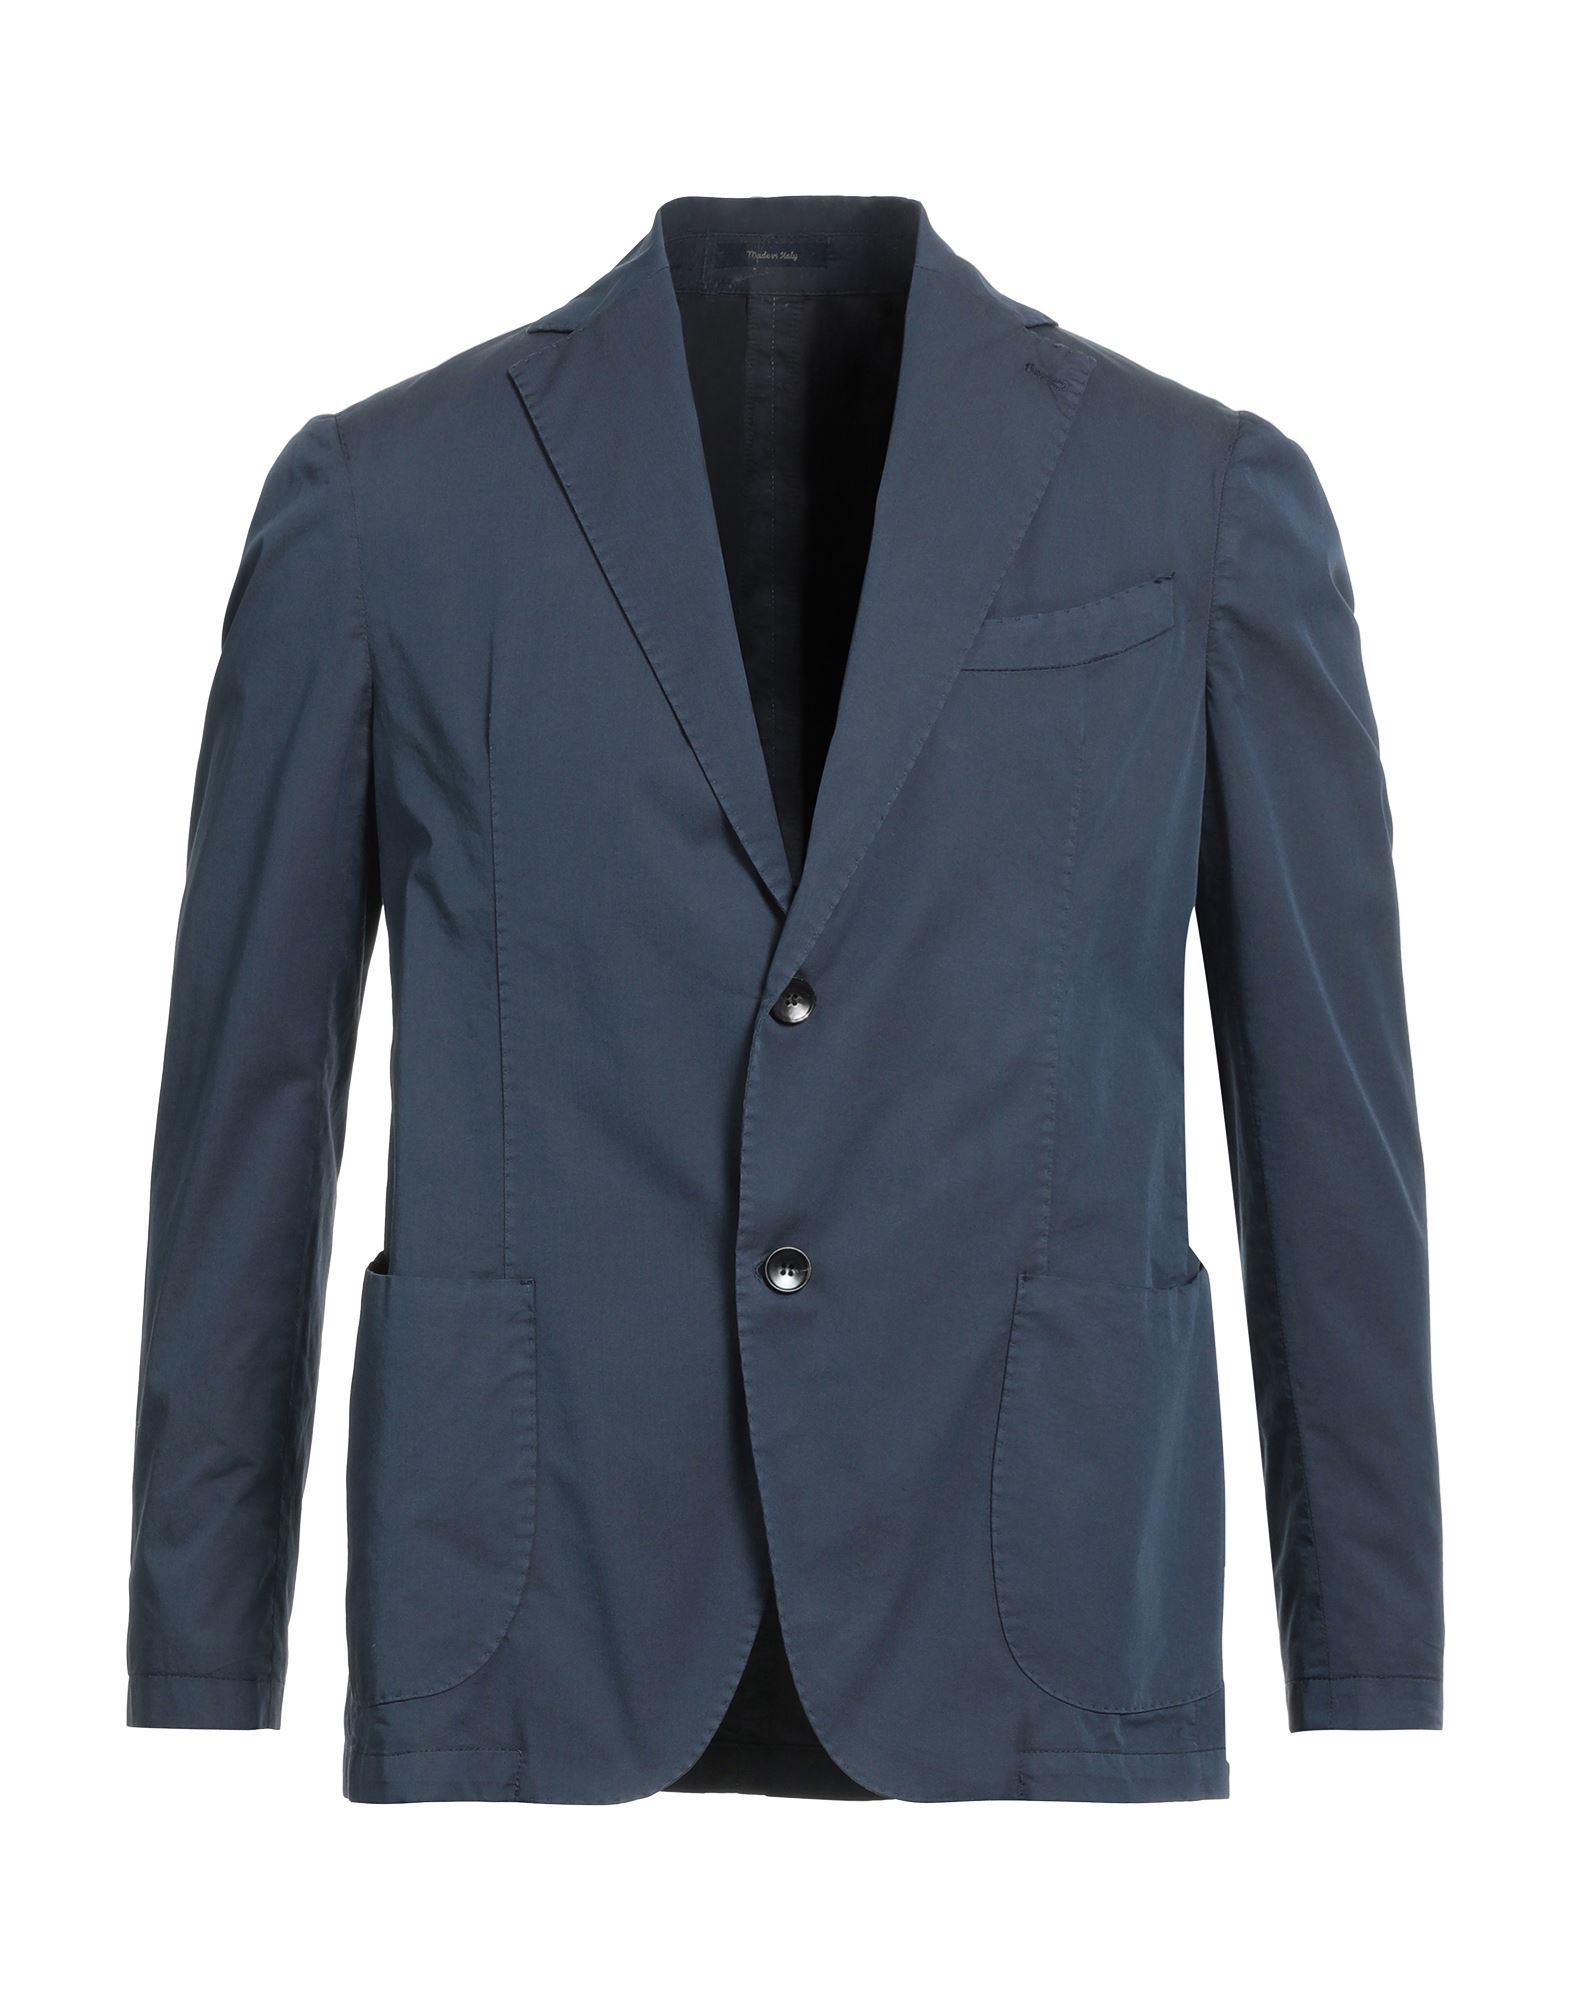 Galà Luxury Man Blazer Navy Blue Size 36 Cotton, Polyester, Elastane